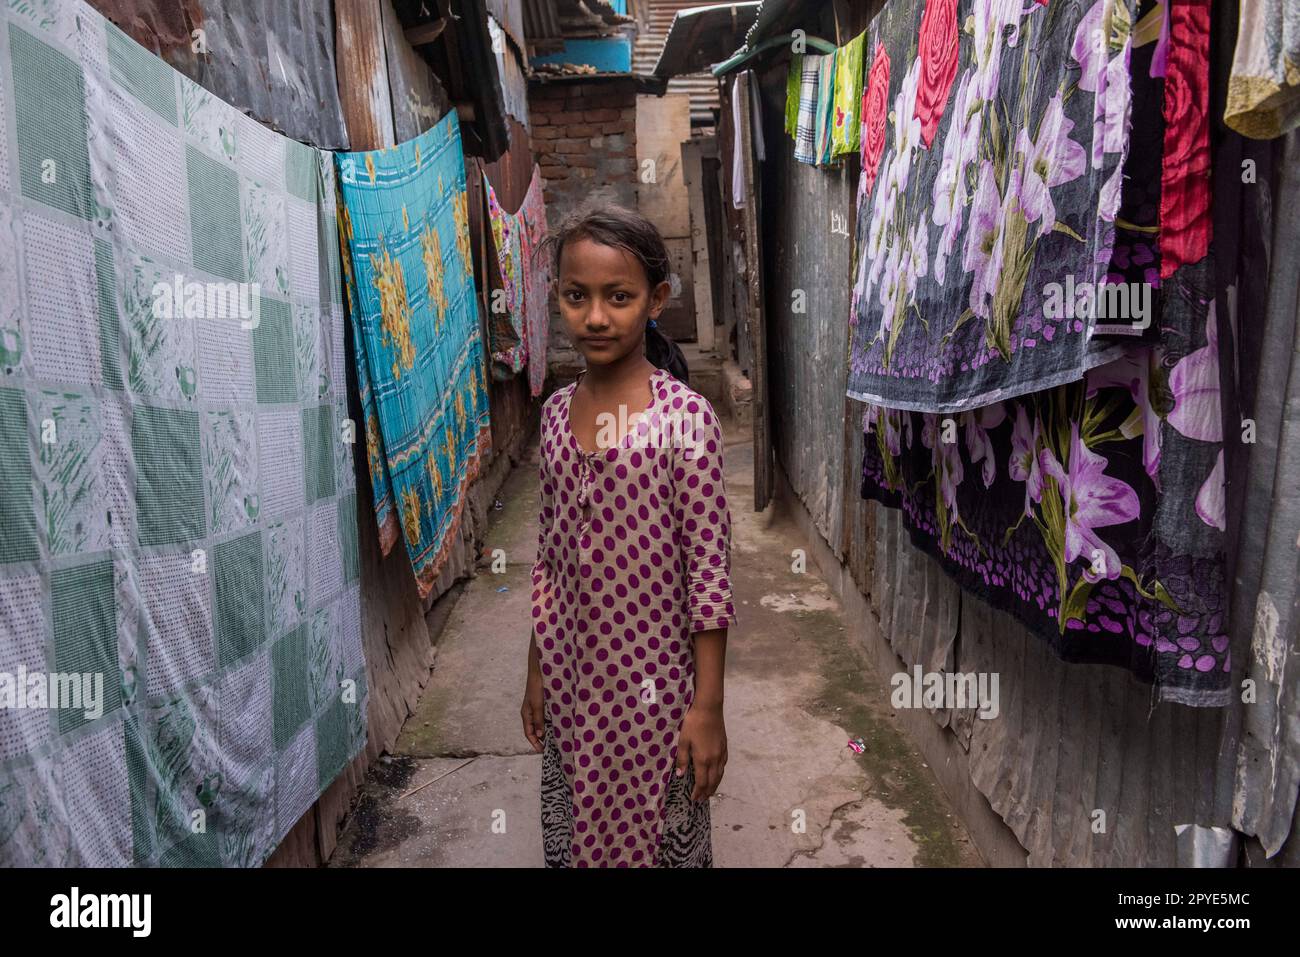 Bangladesch, Dhaka, Korail. Porträt eines jungen Mädchens vor ihrem Haus. 27. März 2017. Nur redaktionelle Verwendung. Stockfoto